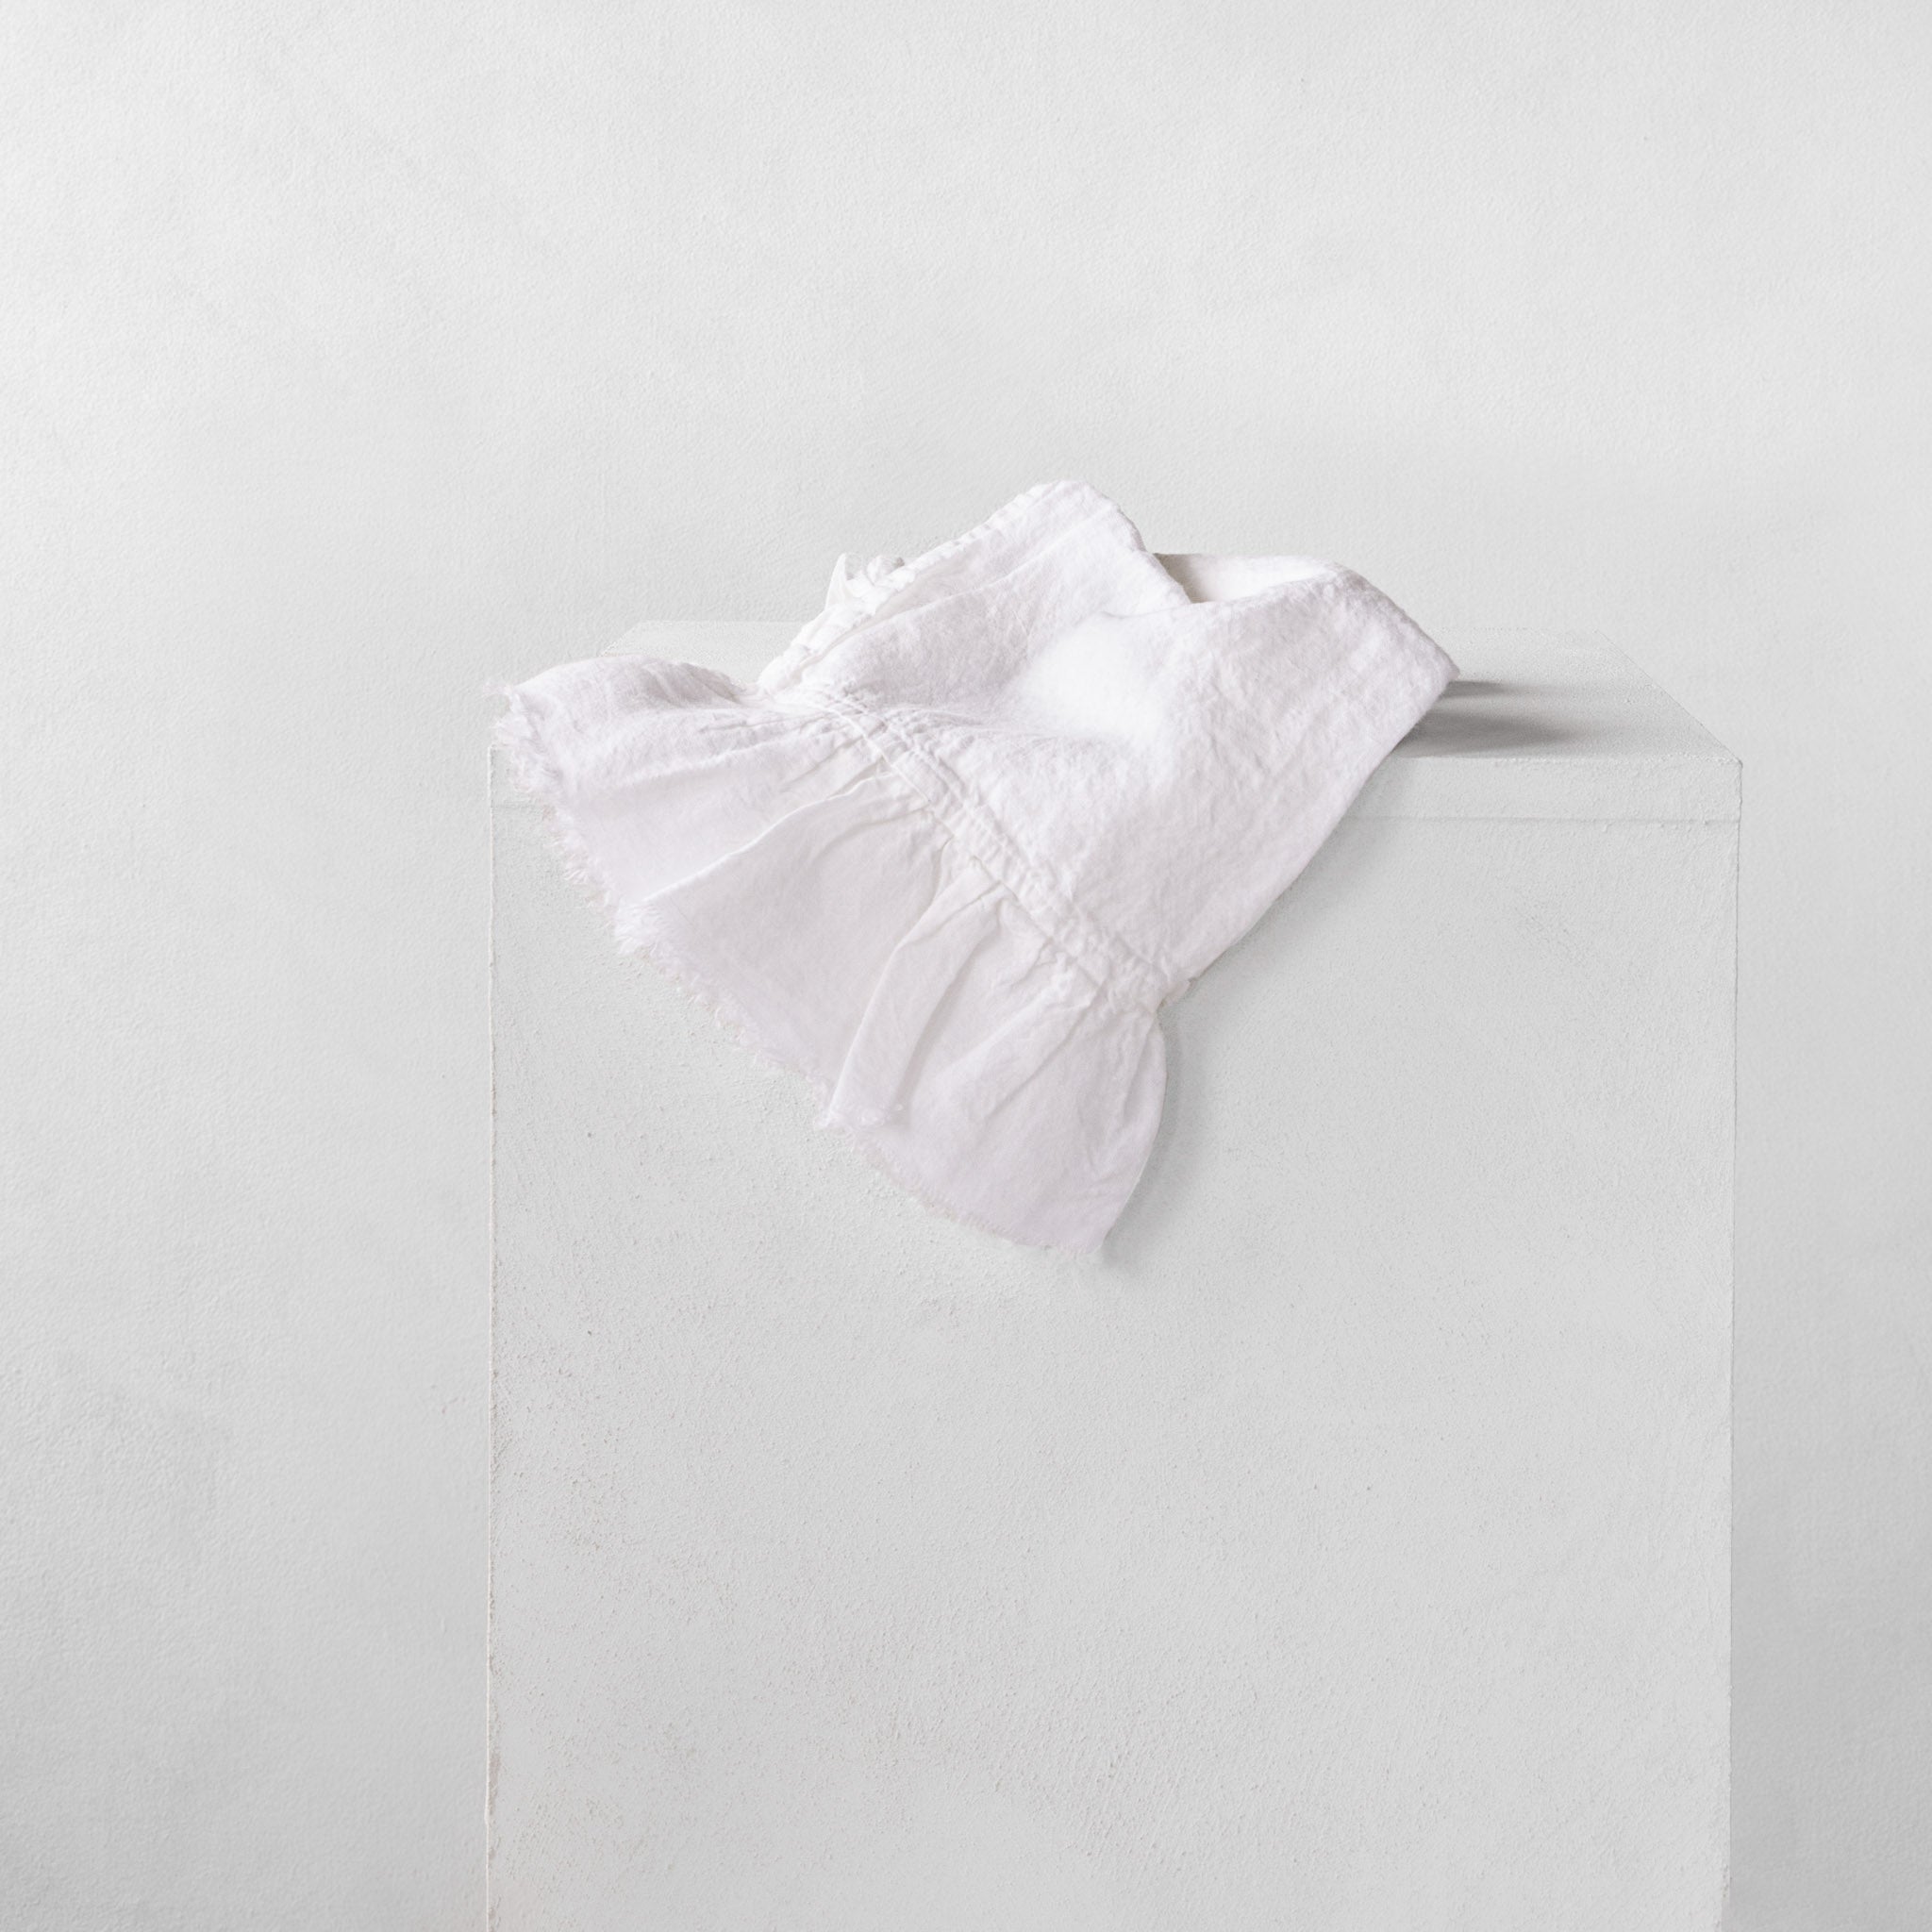 Linen Guest Towels | Antique White | Hale Mercantile Co.